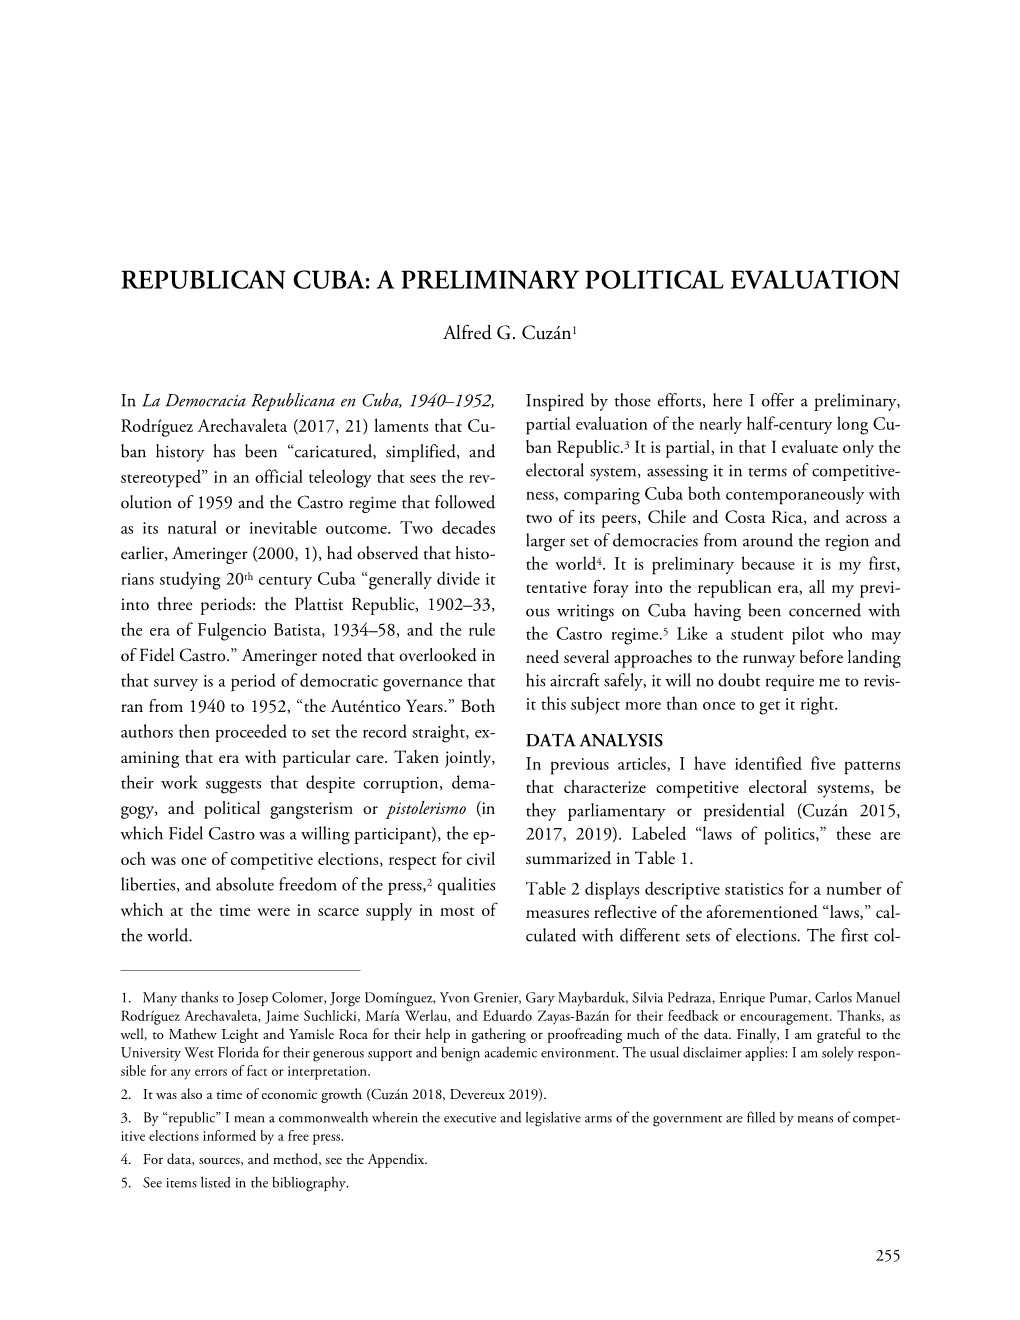 Republican Cuba: a Preliminary Political Evaluation